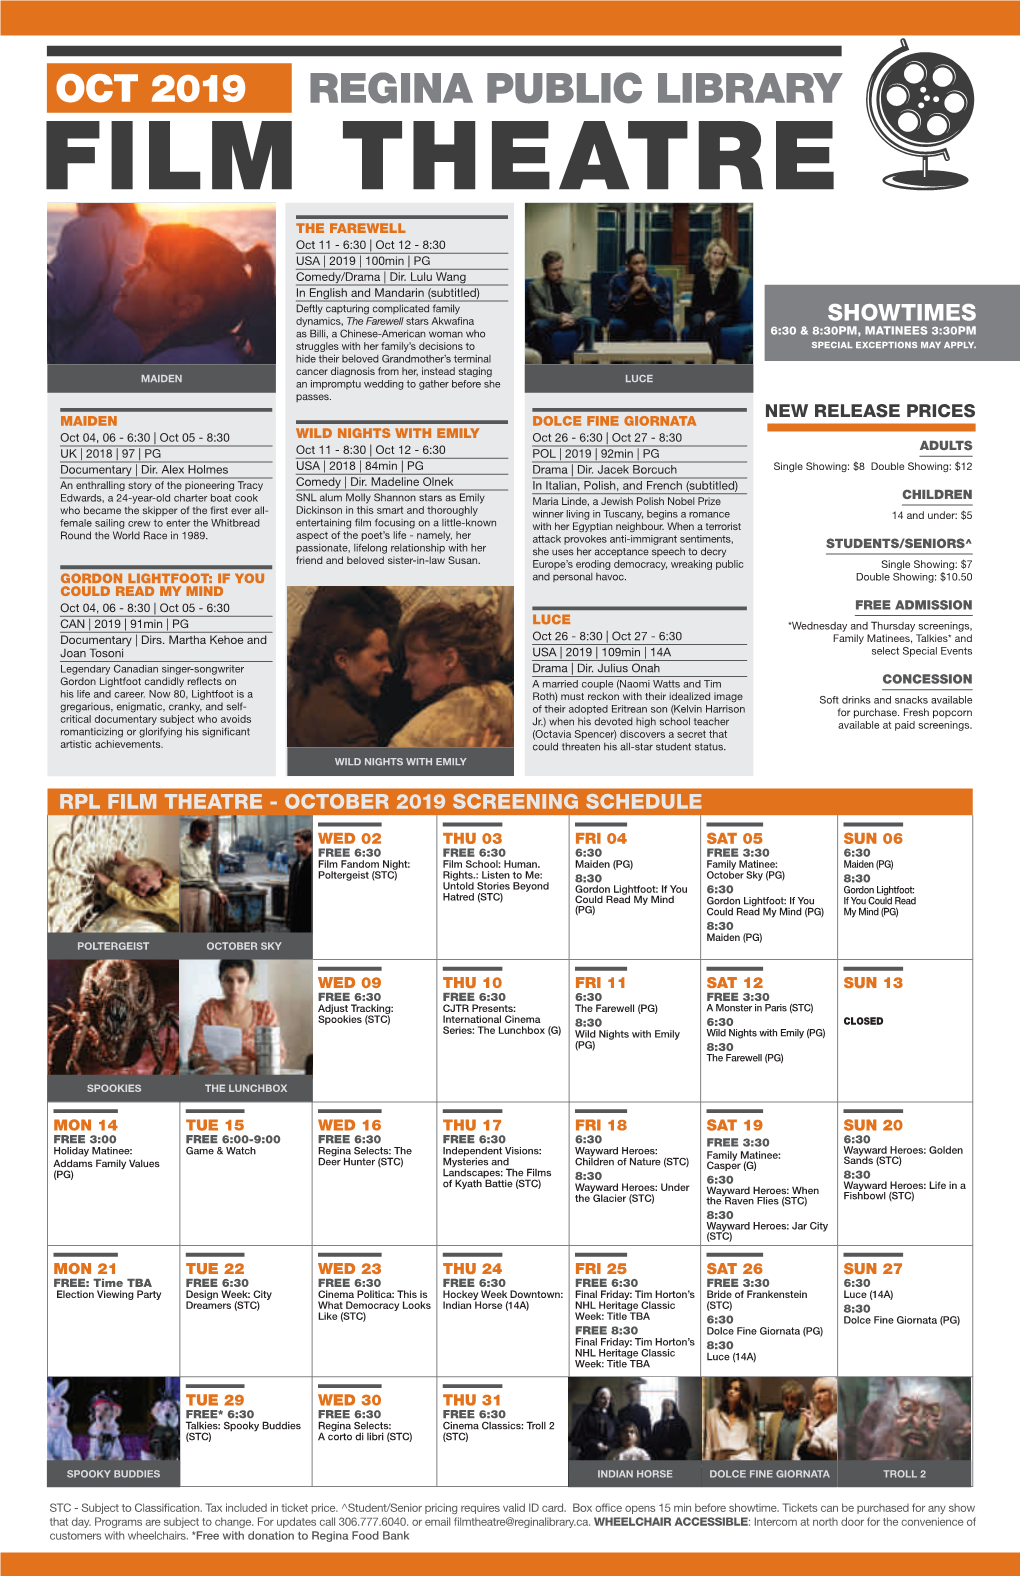 REGINA PUBLIC LIBRARY FILM THEATRE the Farewell Oct 11 - 6:30 | Oct 12 - 8:30 USA | 2019 | 100Min | PG Comedy/Drama | Dir